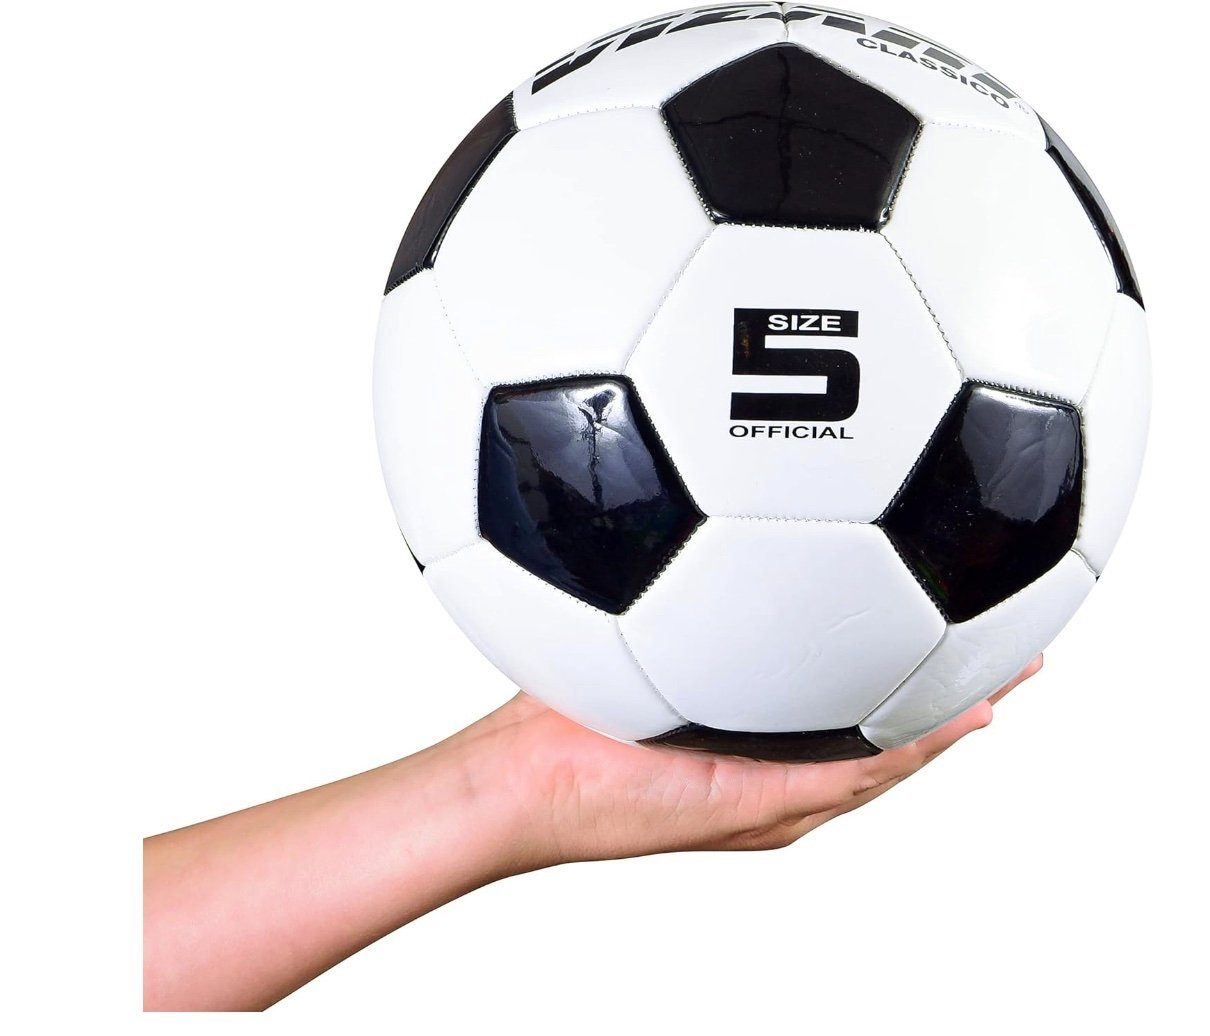 Ball 5 Fußball WHT/BLK CLASSICO VIZARI